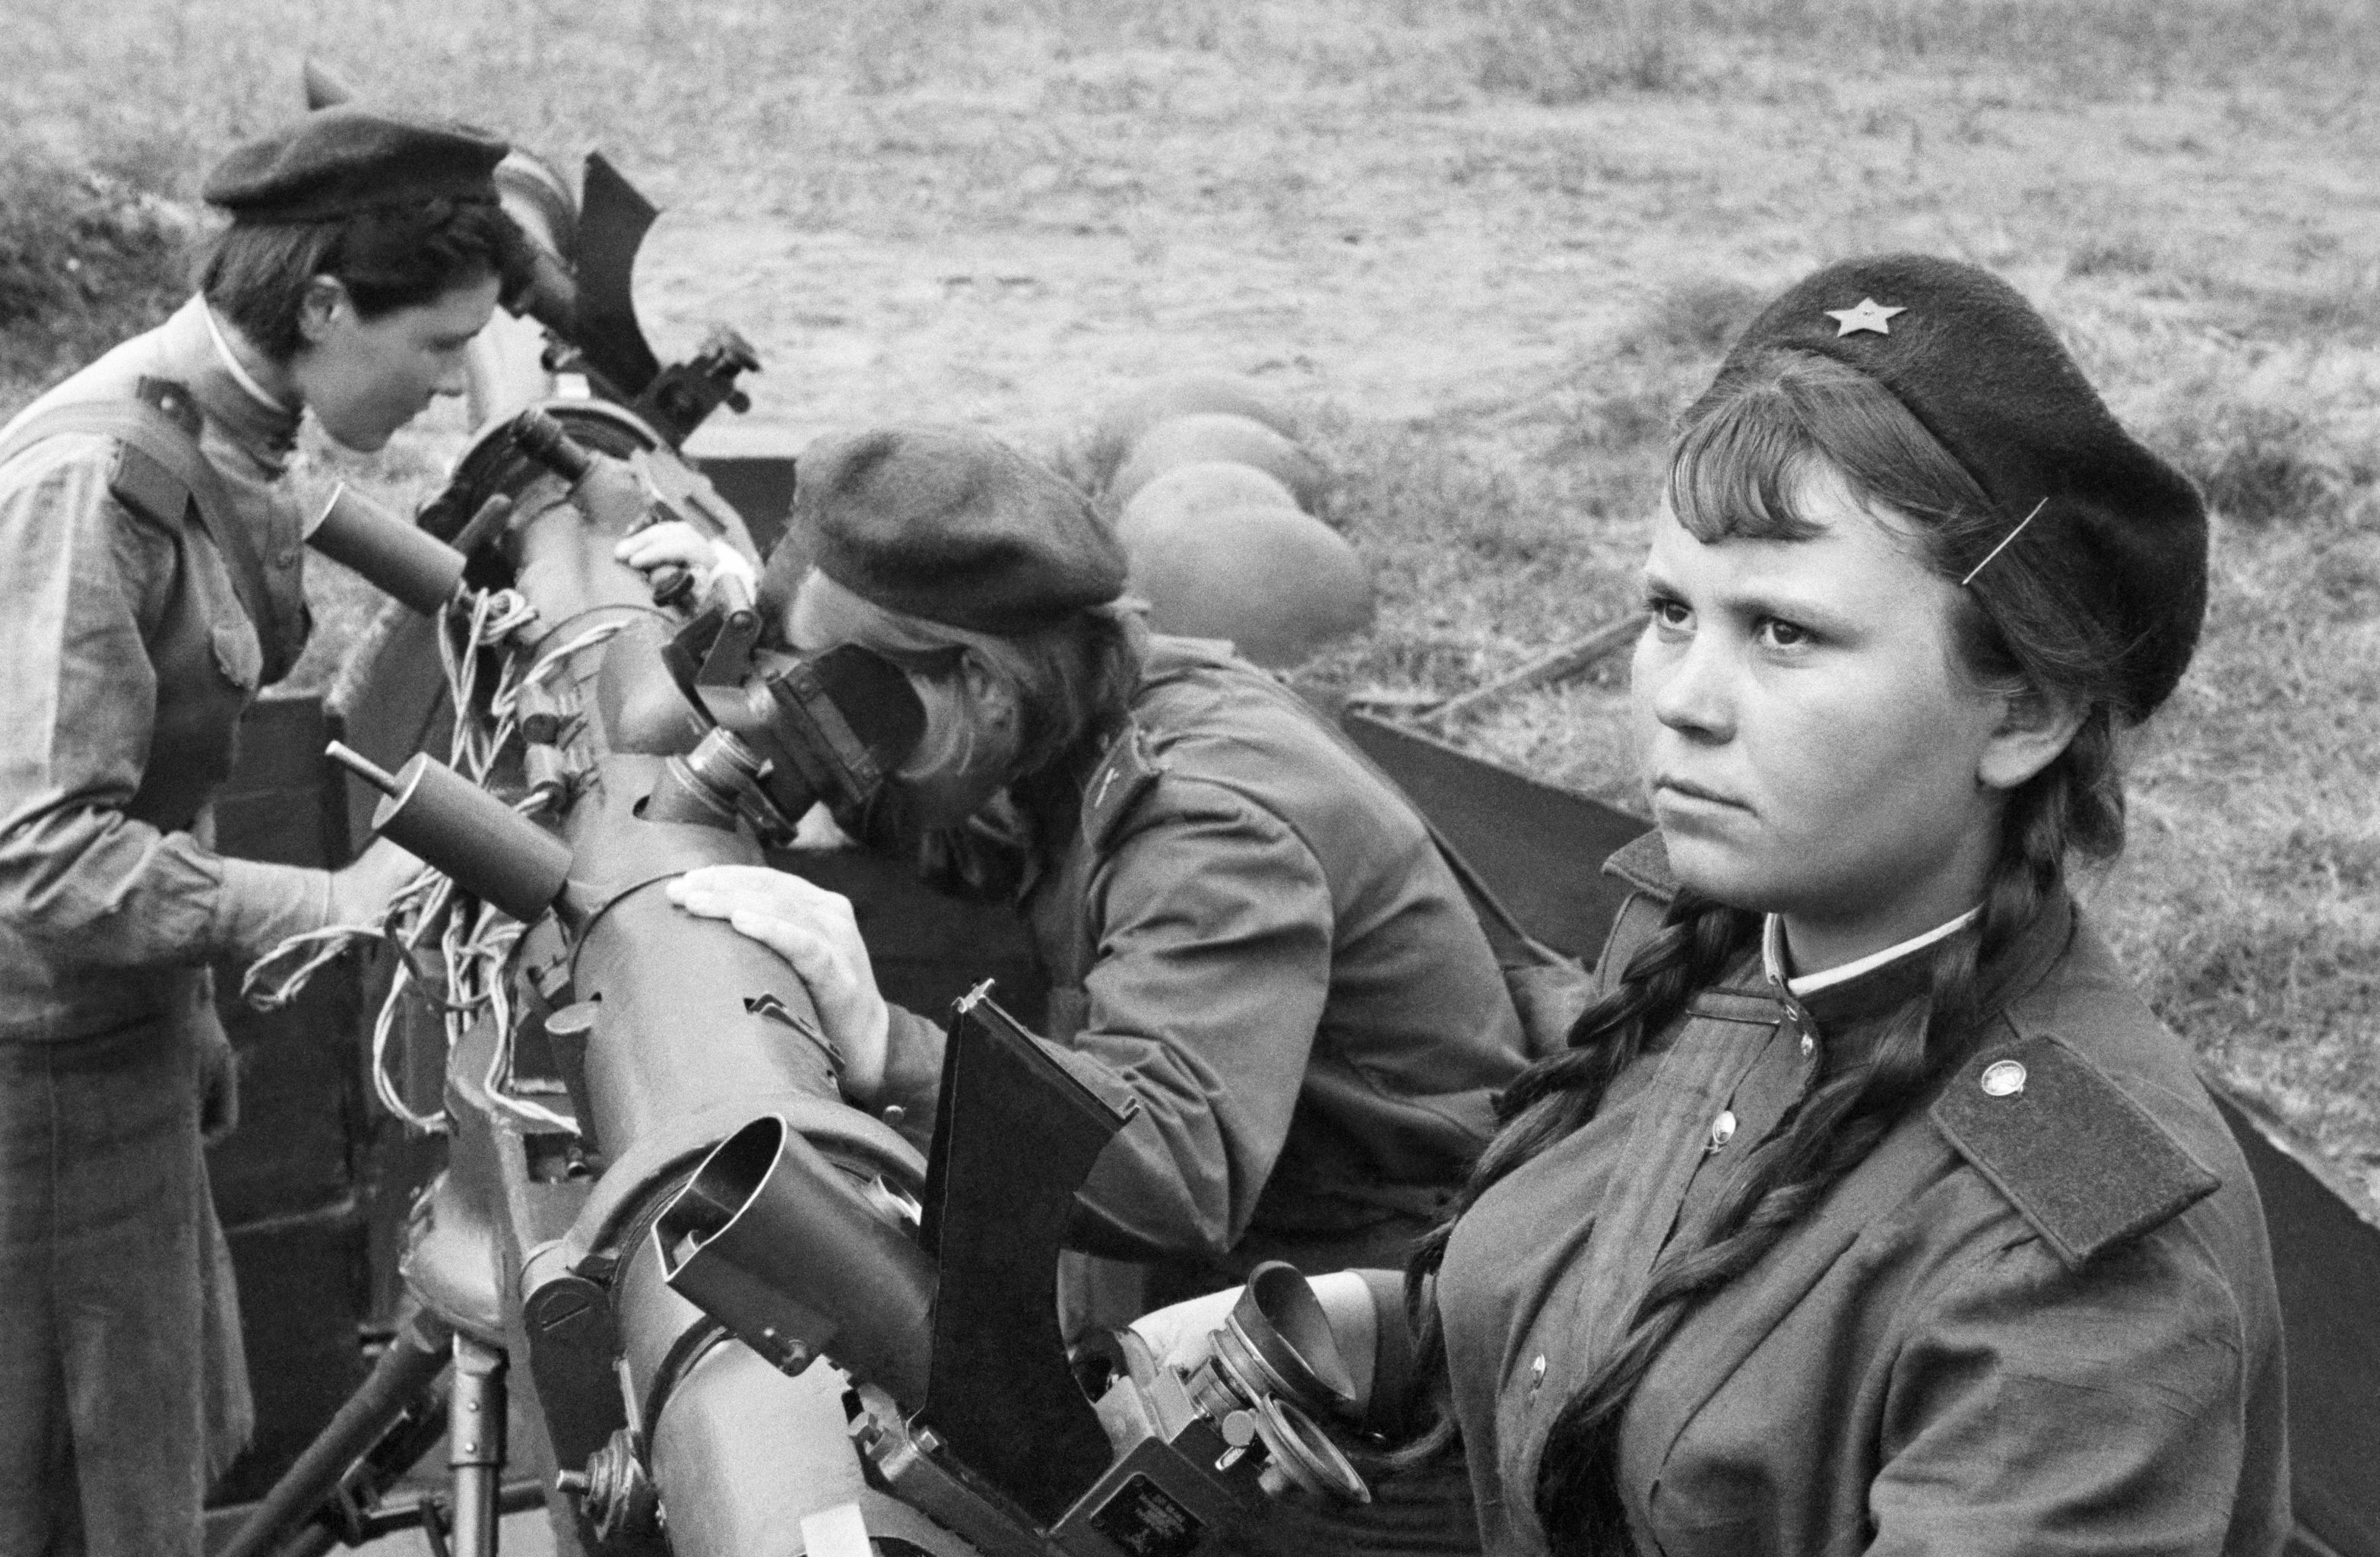 Б ввв. Зенитчицы 1942. Девушки зенитчицы на войне 1941-1945.